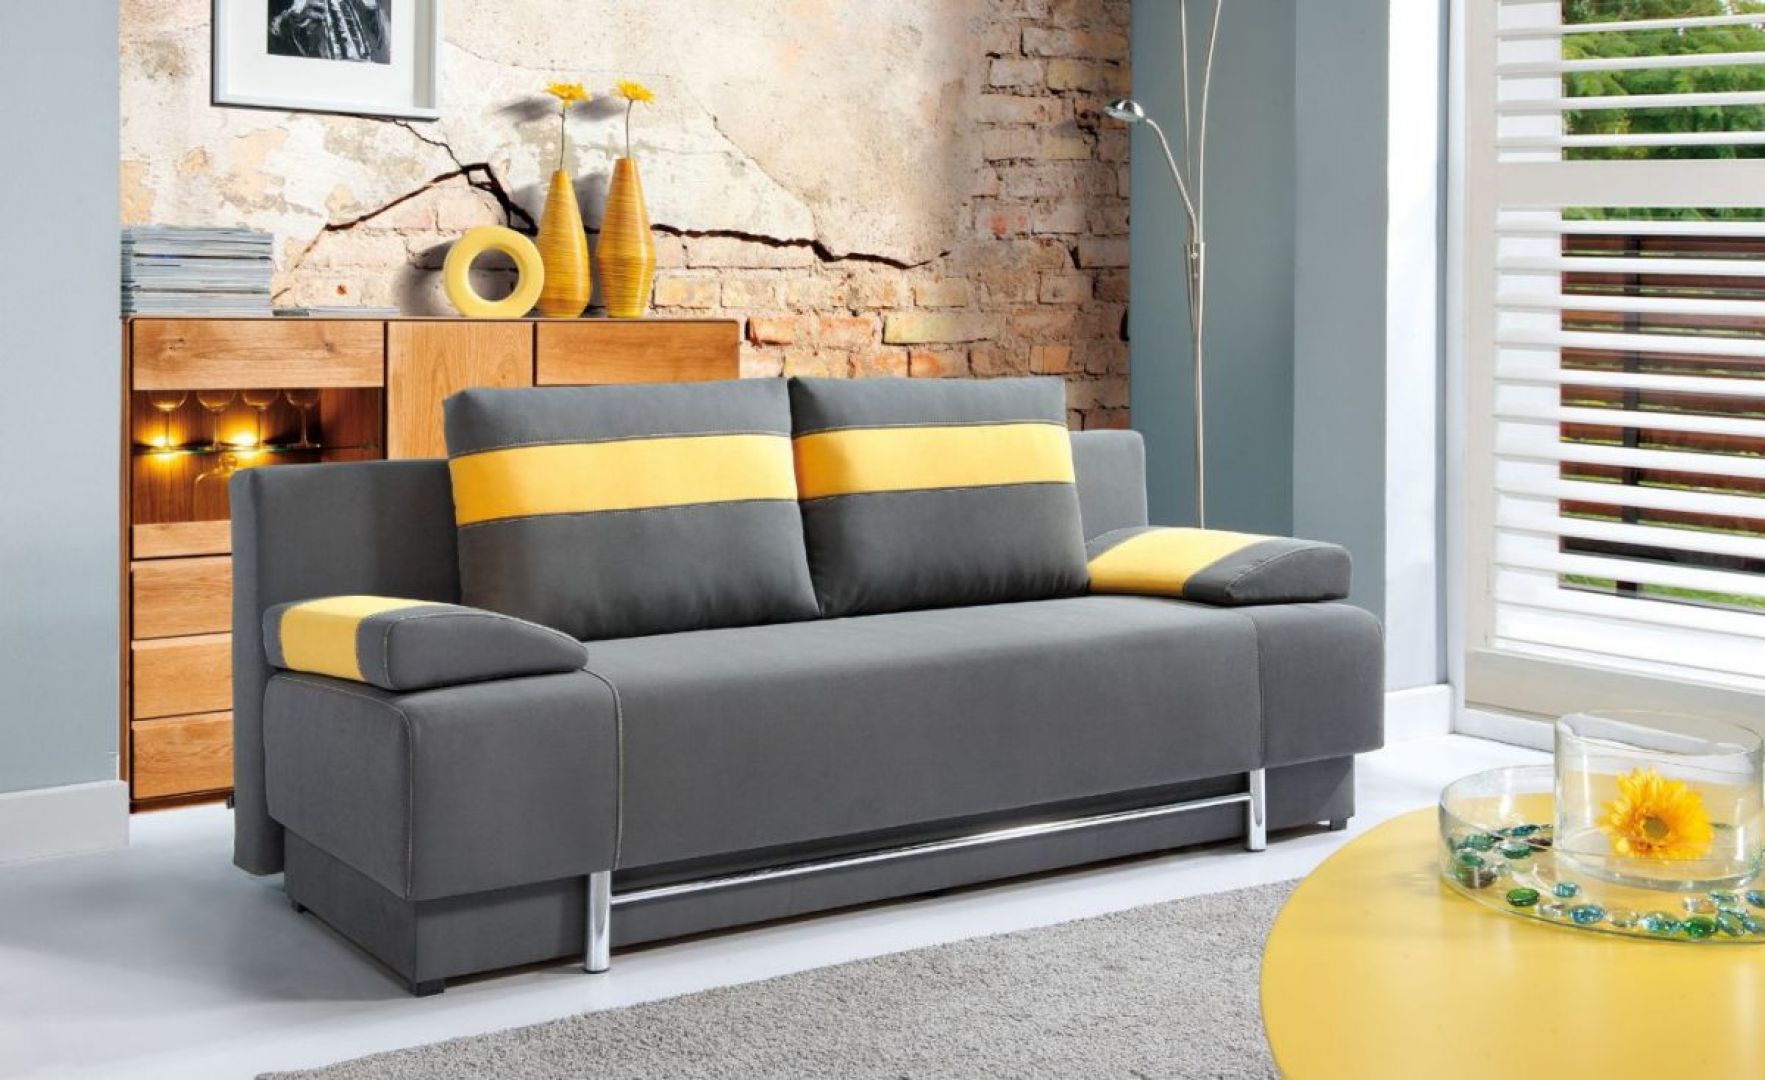 Kompaktowa sofa „Bursa” z oferty firmy PMW posiada funkcję spania oraz wy-godne w obsłudze wspomagania otwierania. Fot. PMW